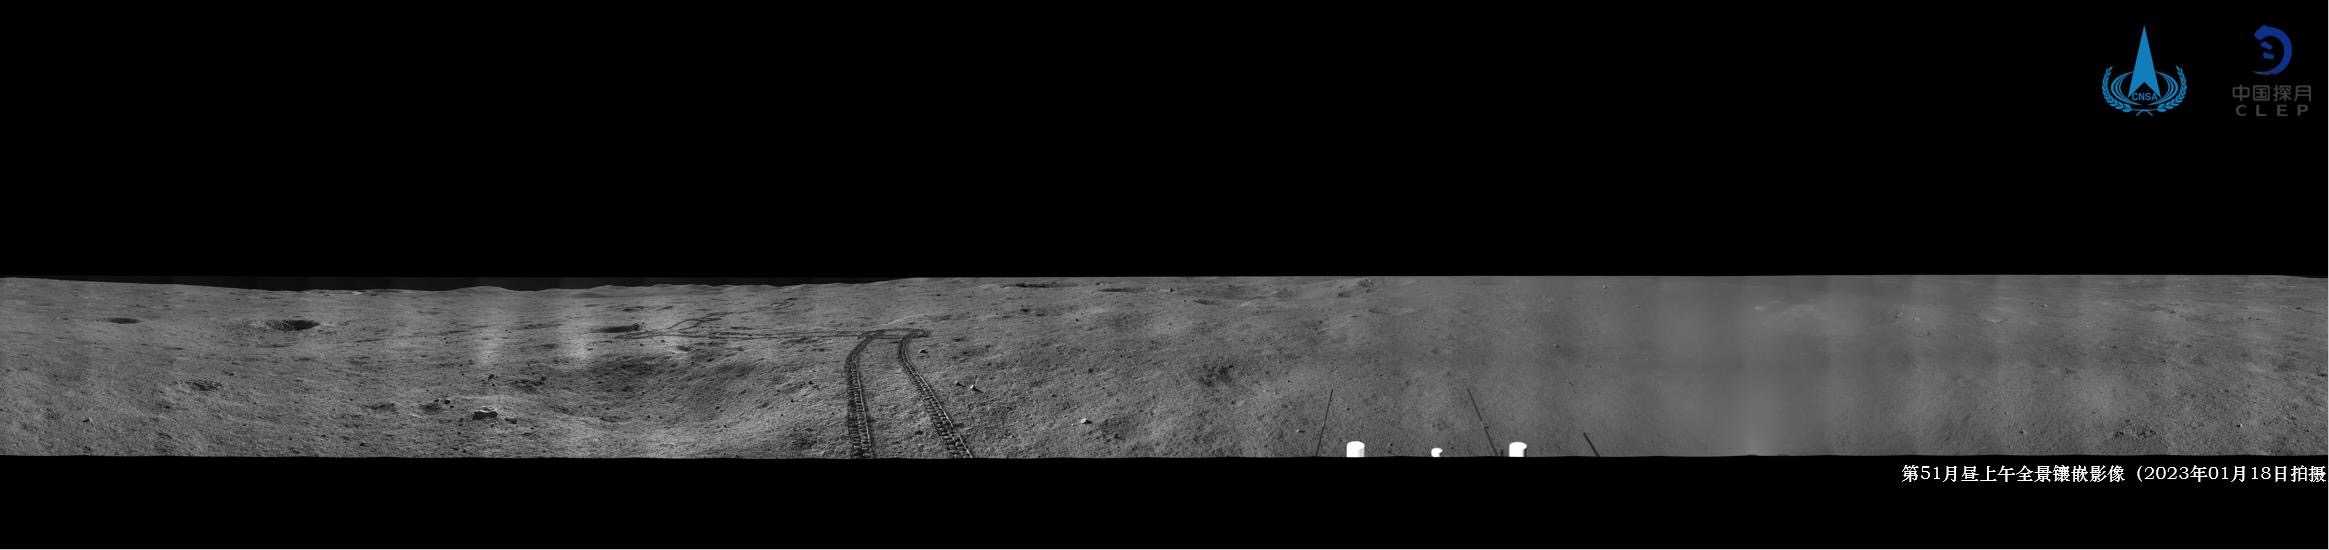 Китайский луноход передал новые снимки с обратной стороны Луны